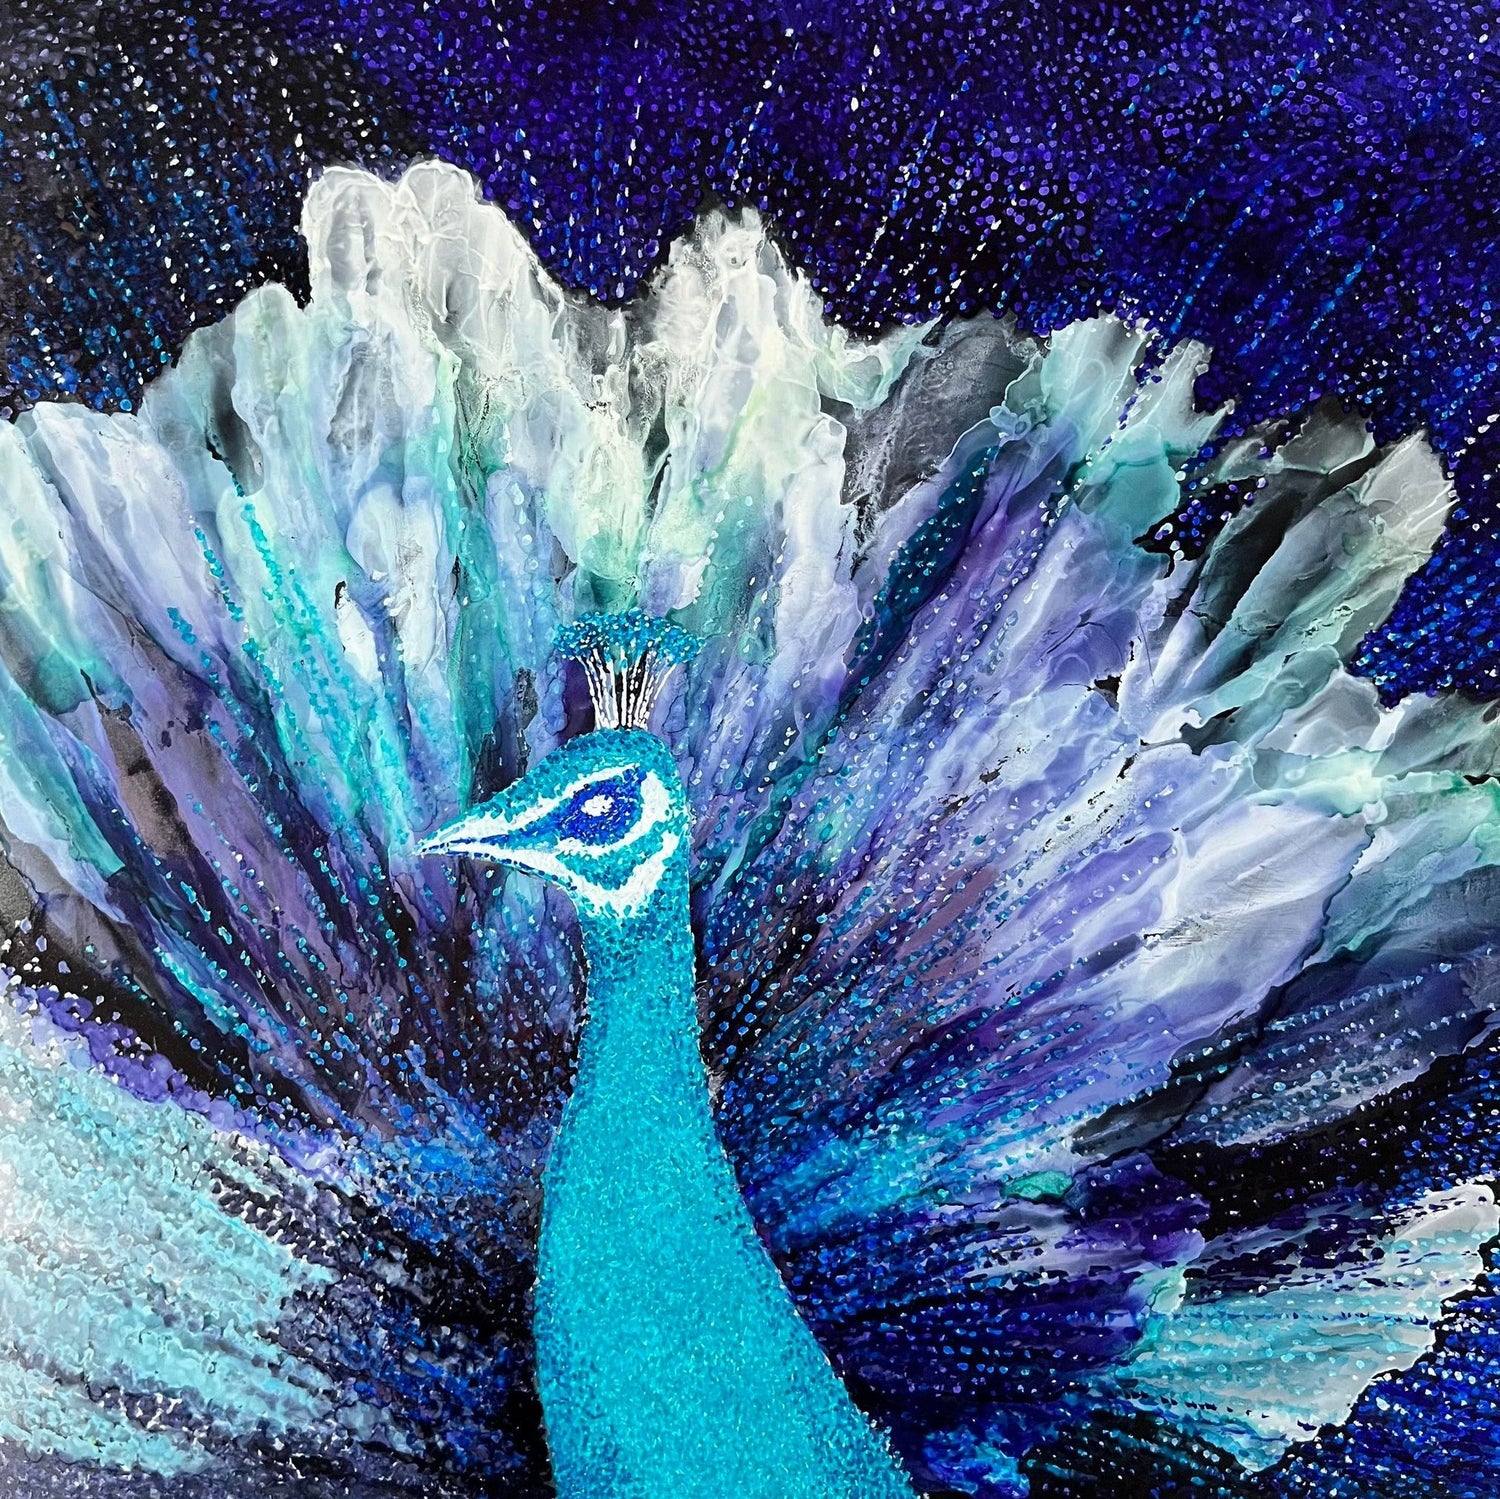 peacock-paintings